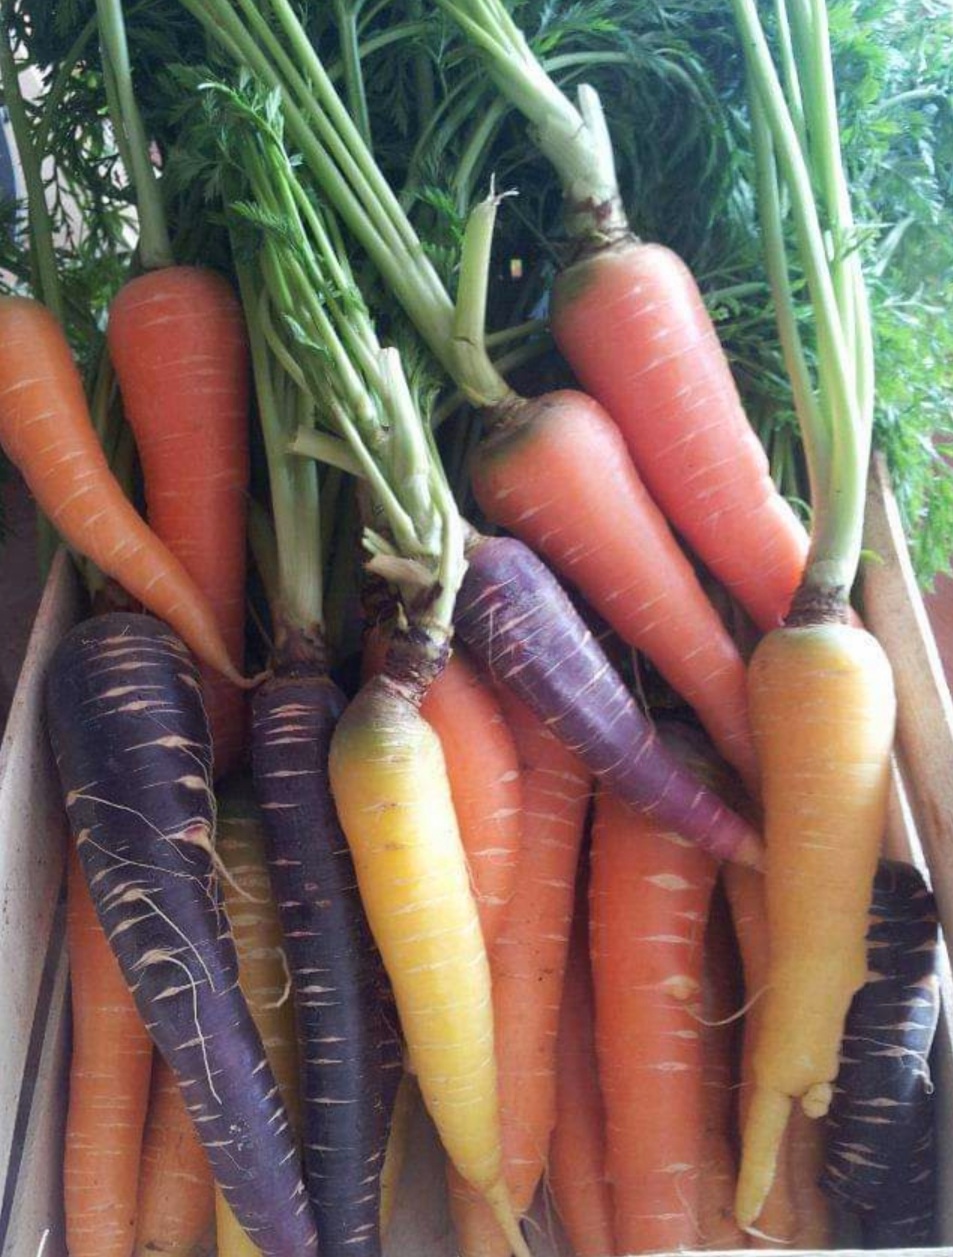 Multicolour carrots typical of Polignano a Mare